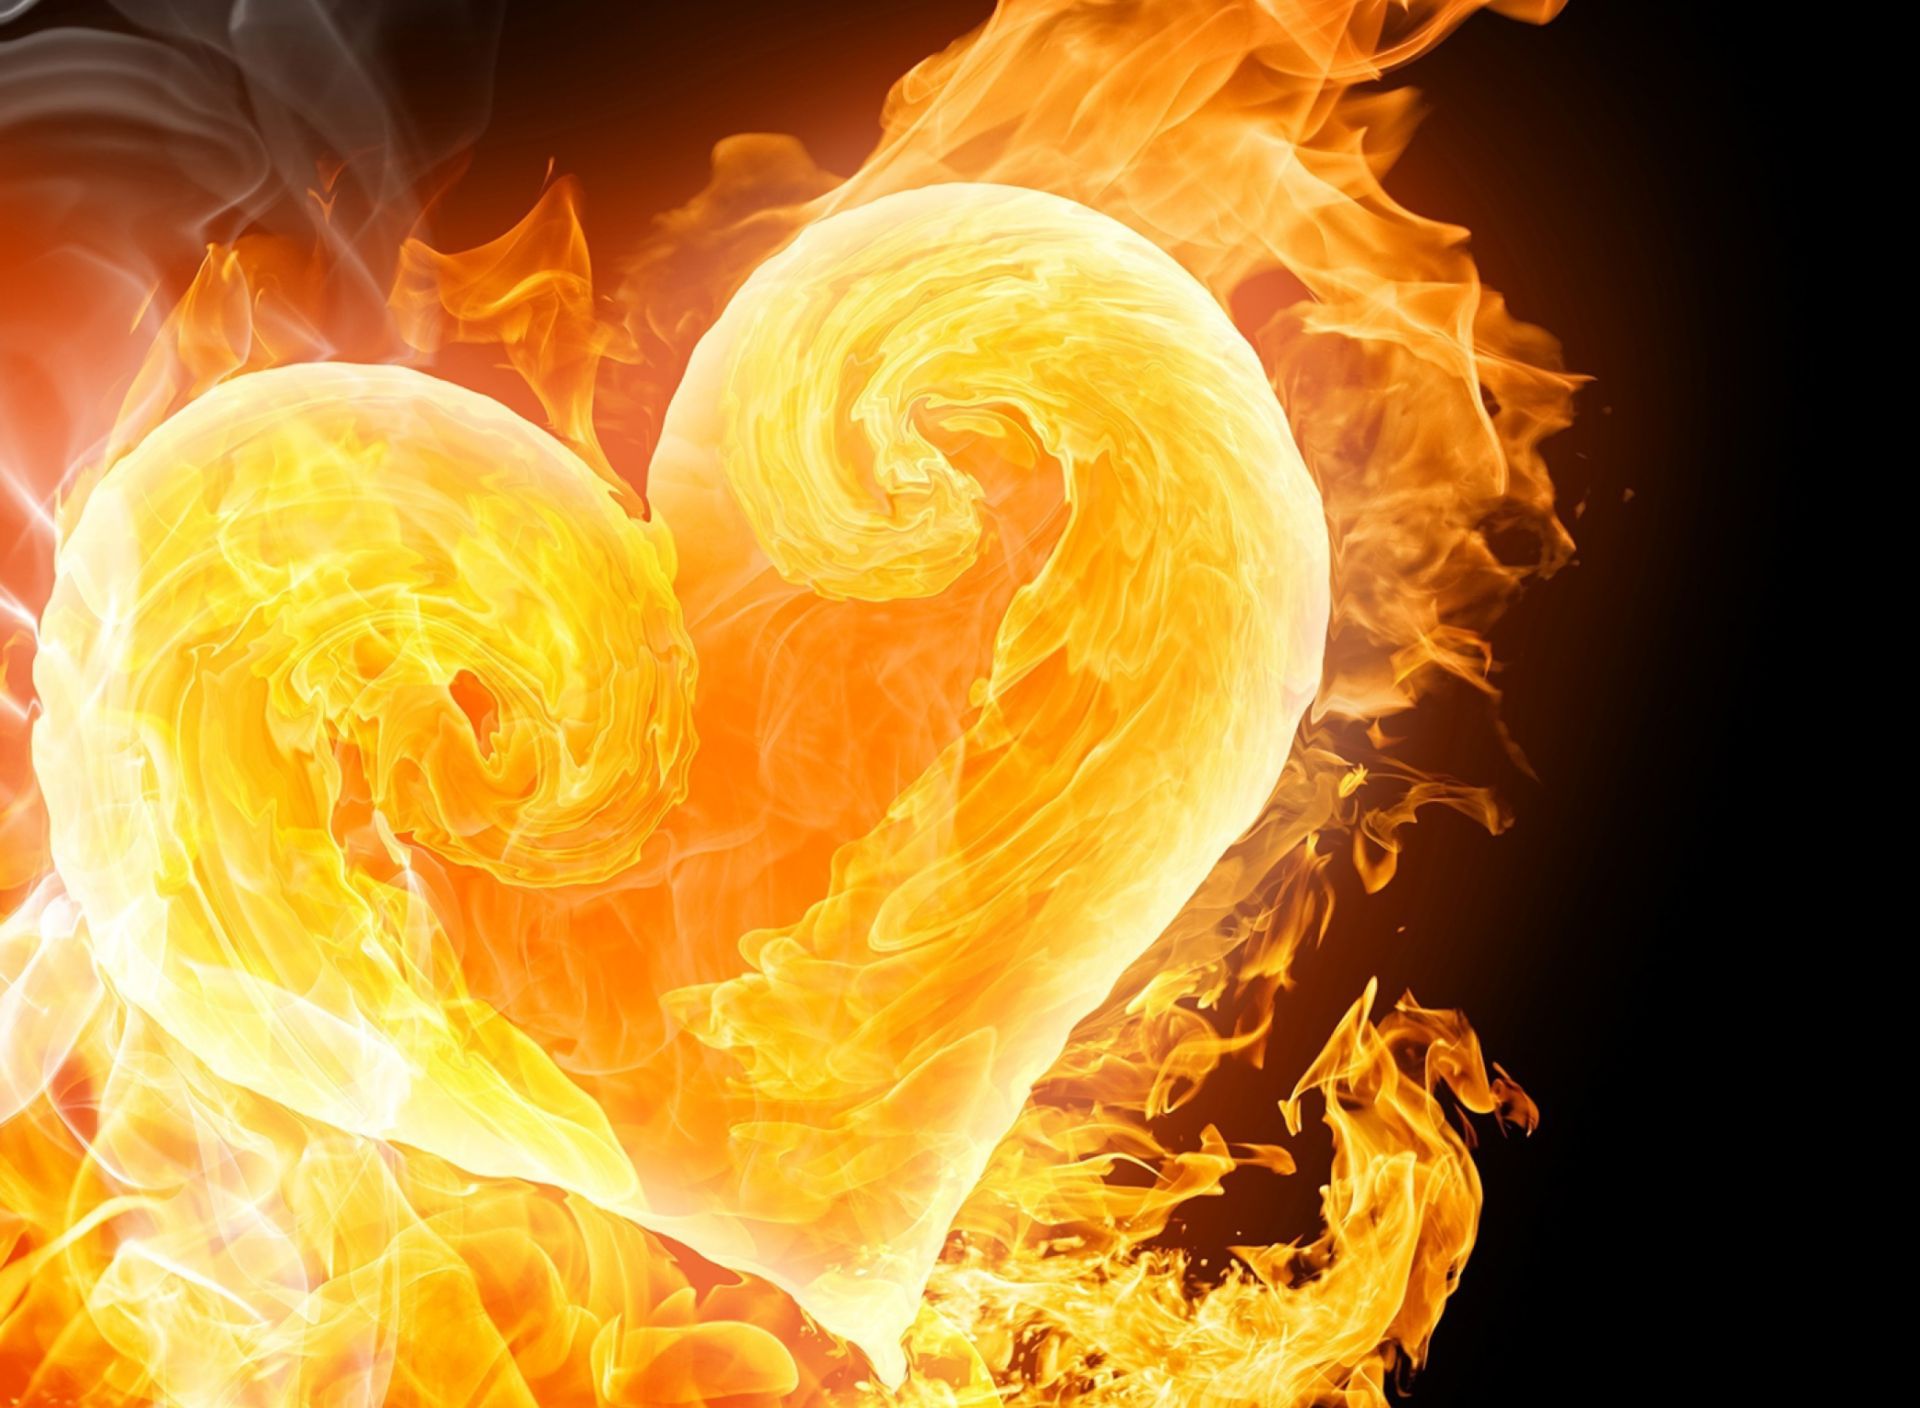 Скачать обои бесплатно Огонь, Пламя, Сердце, Художественные картинка на рабочий стол ПК